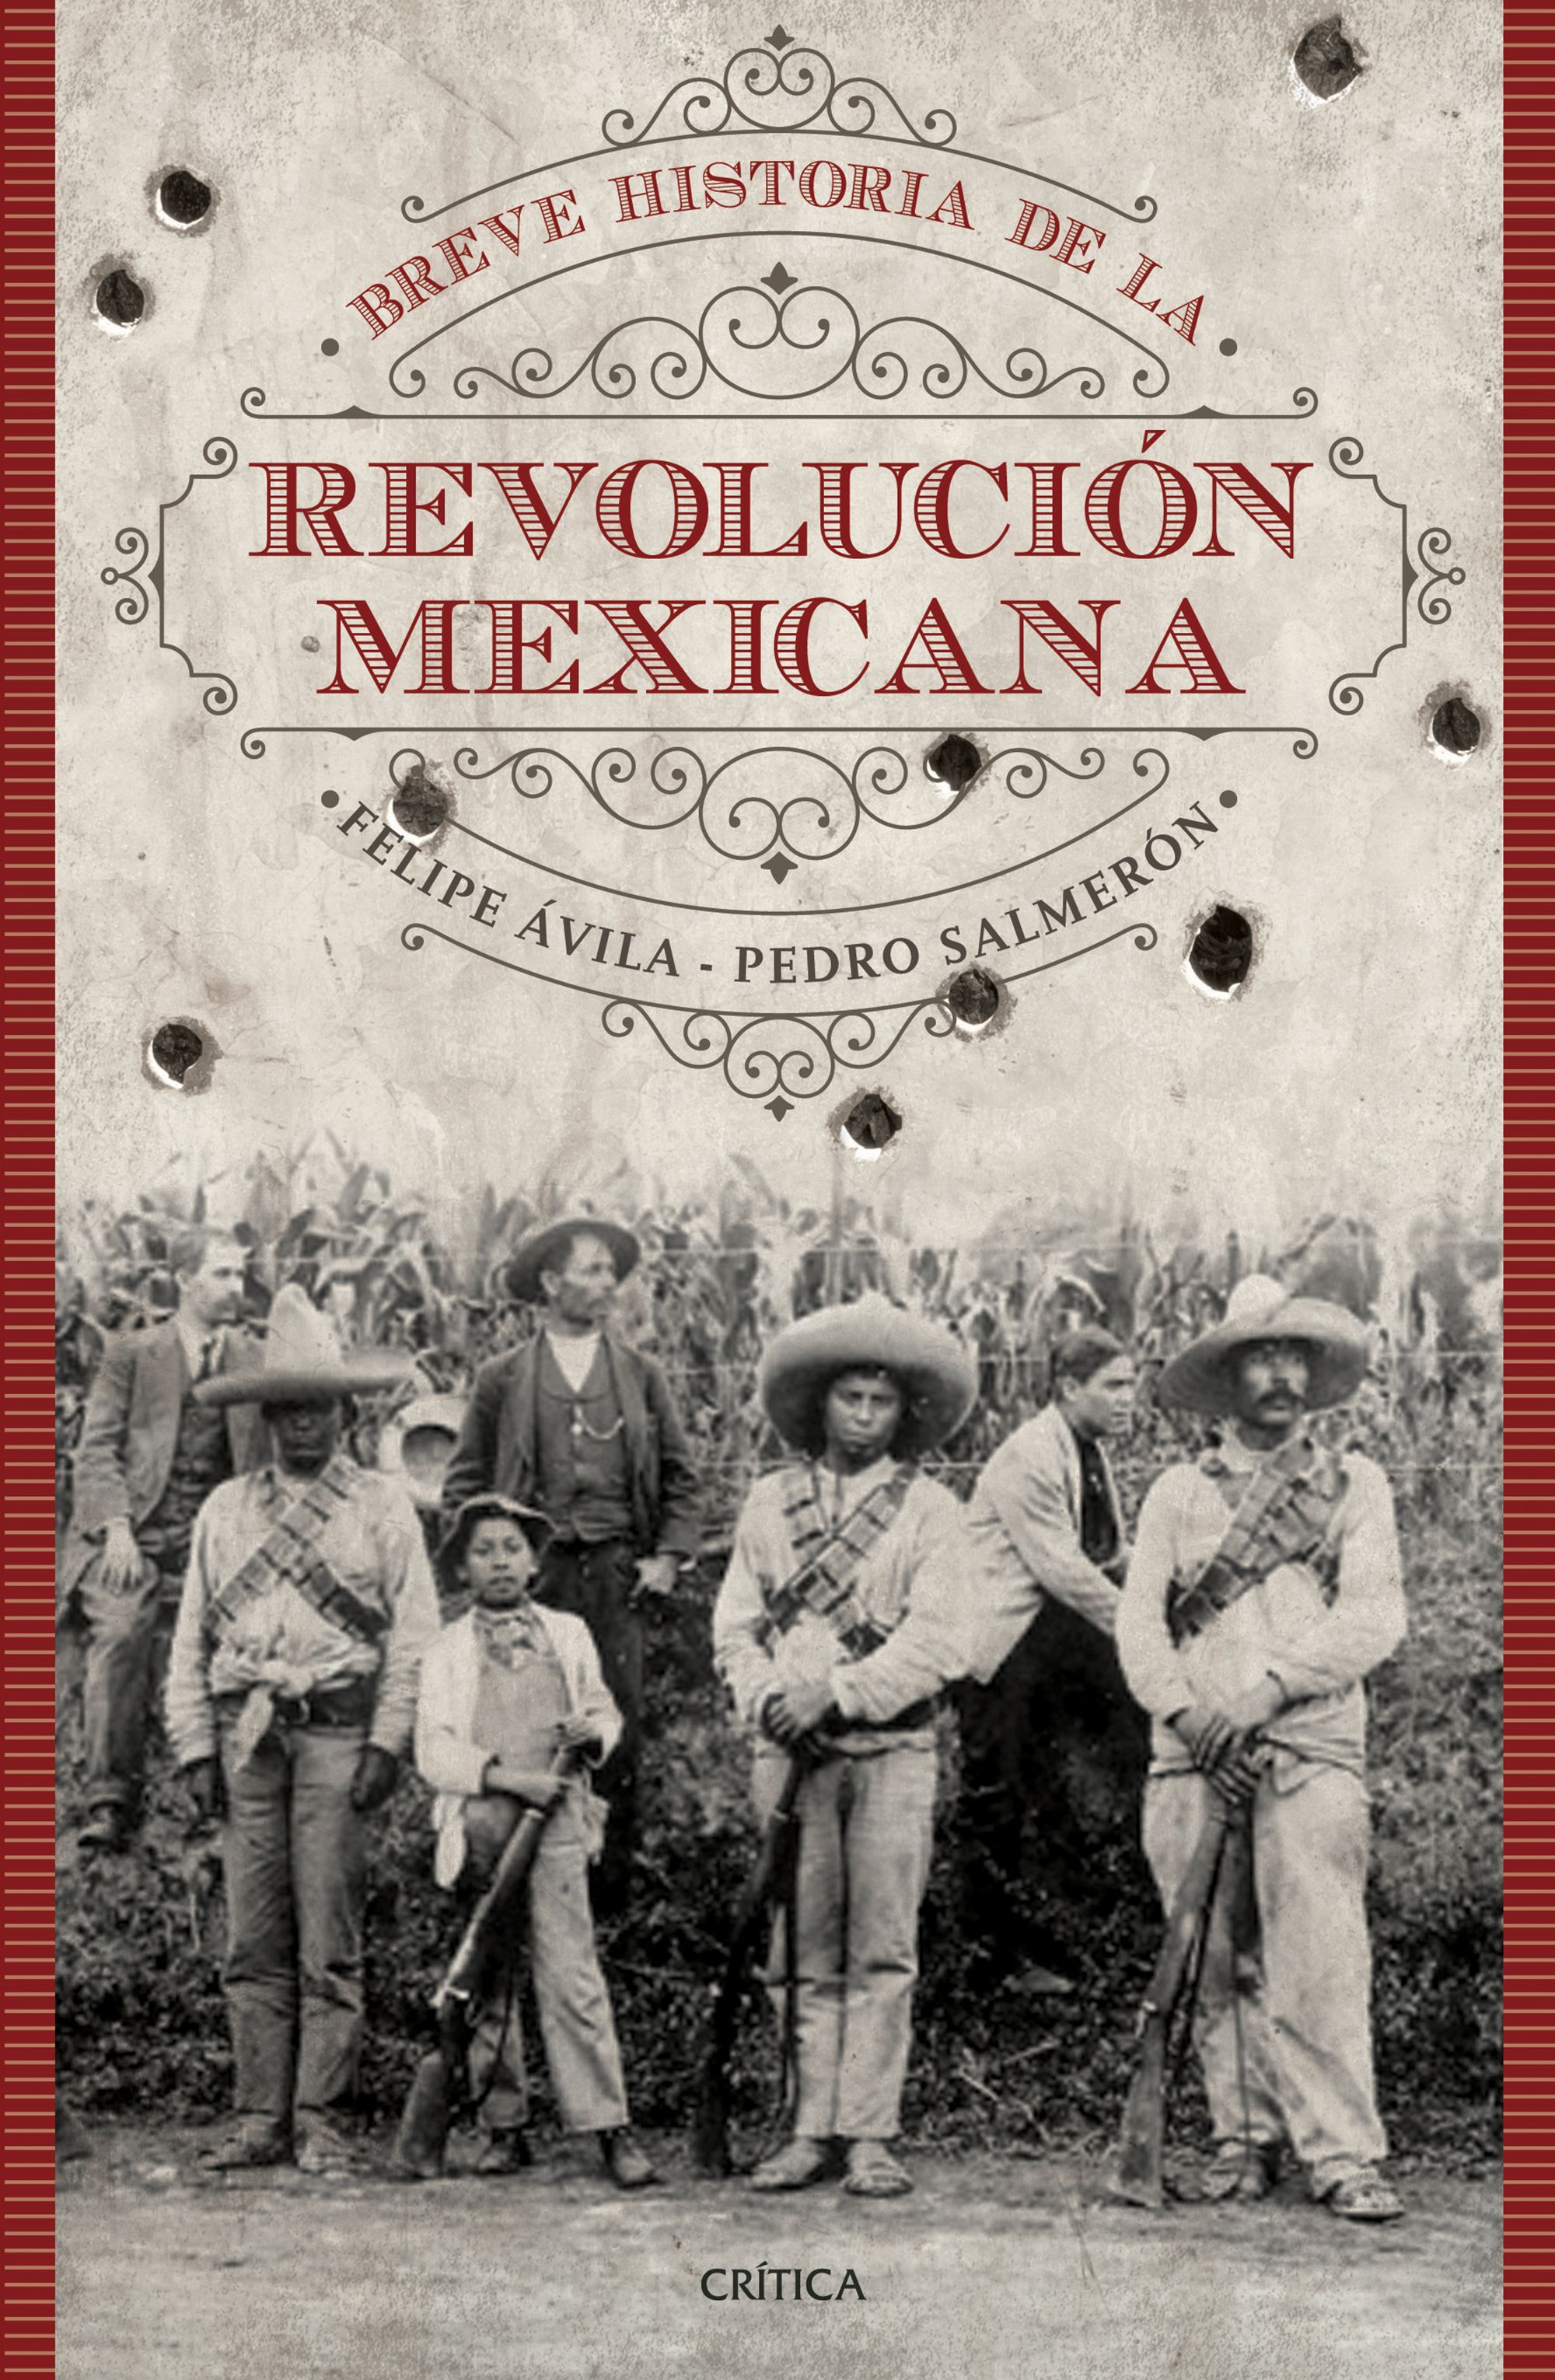 Breve historia de la Revolución Mexicana :: Amabook